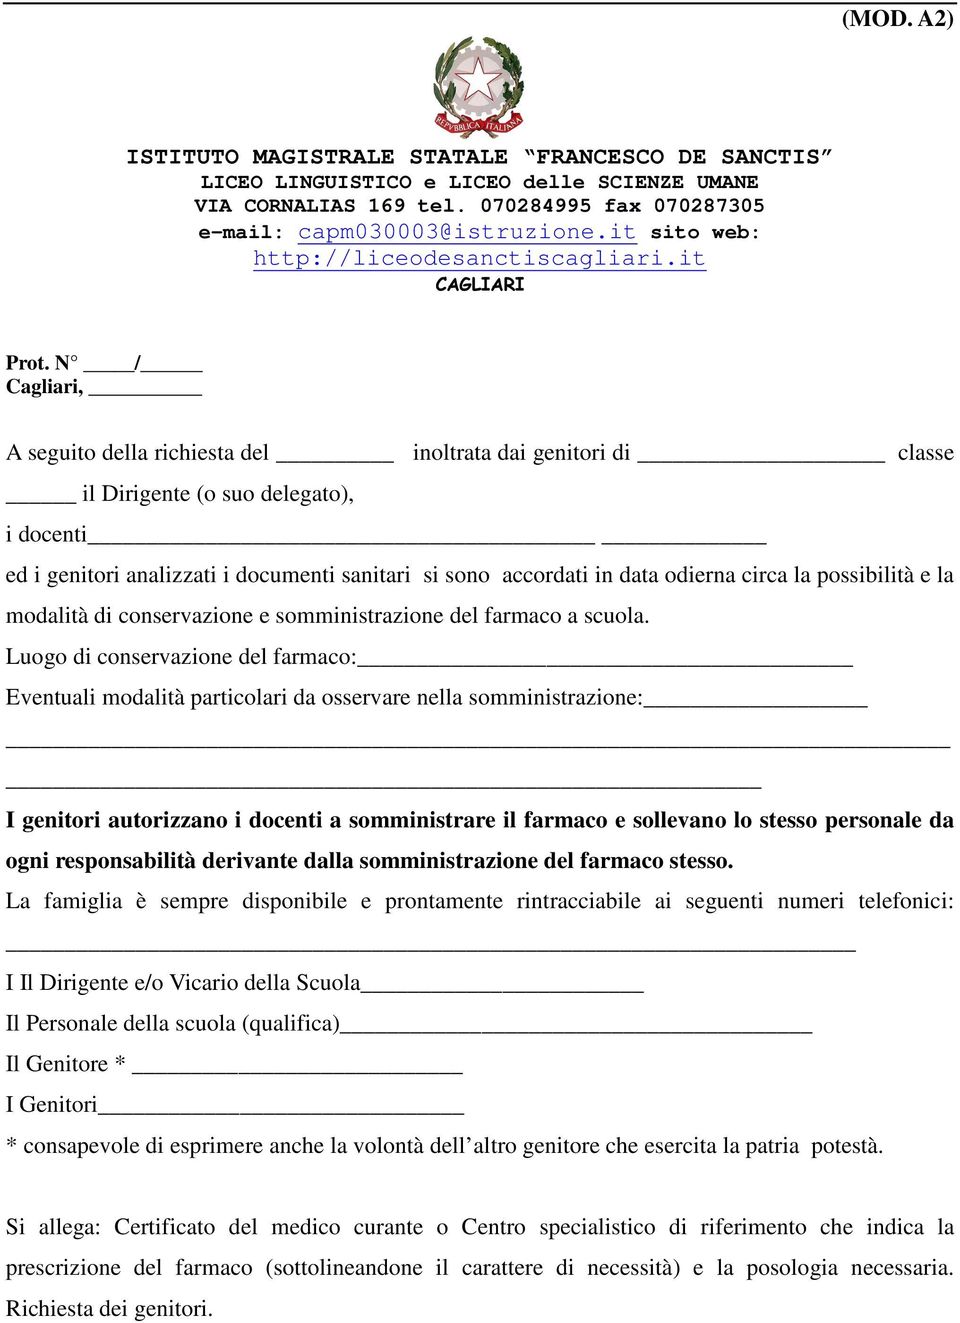 N / Cagliari, A seguito della richiesta del inoltrata dai genitori di classe il Dirigente (o suo delegato), i docenti ed i genitori analizzati i documenti sanitari si sono accordati in data odierna